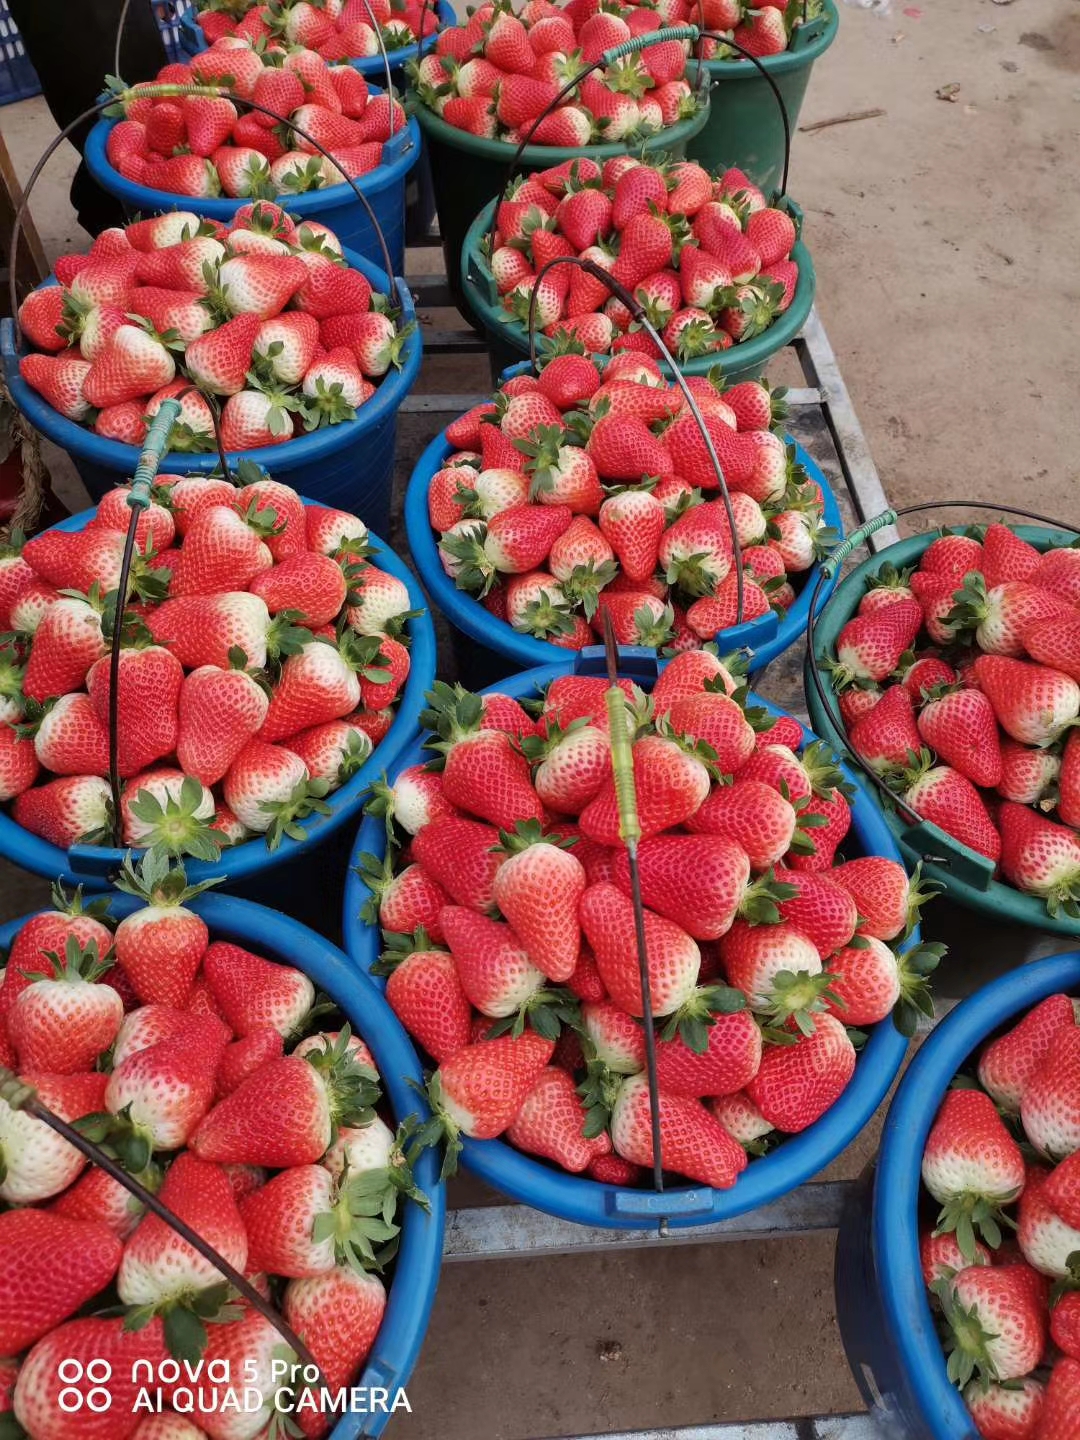 桃熏草莓苗价格,甜宝草莓苗批发价格